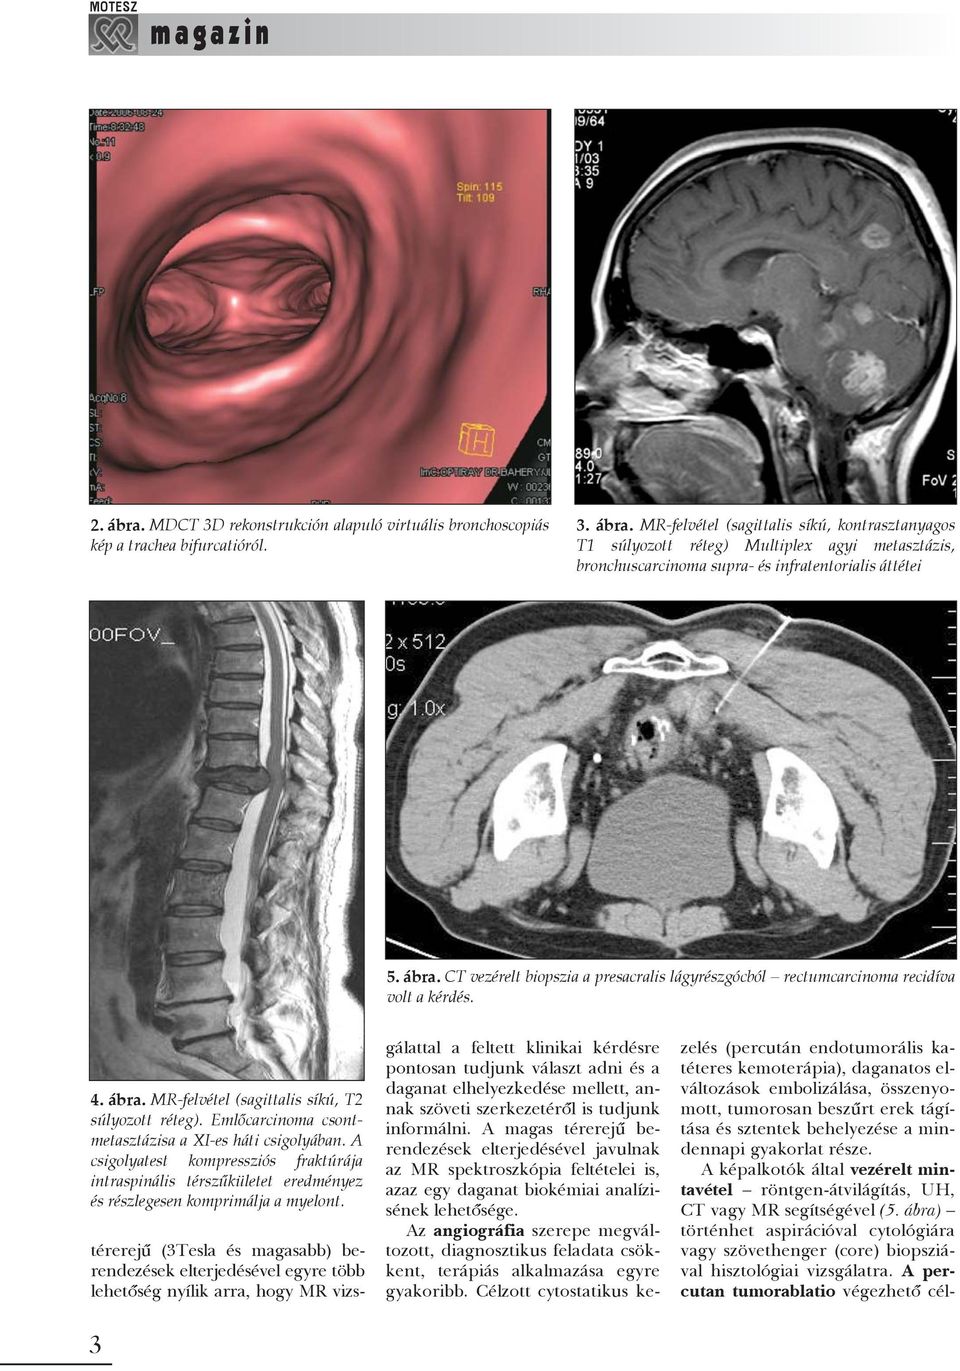 Emlõcarcinoma csontmetasztázisa a XI-es háti csigolyában. A csigolyatest kompressziós fraktúrája intraspinális térszûkületet eredményez és részlegesen komprimálja a myelont.